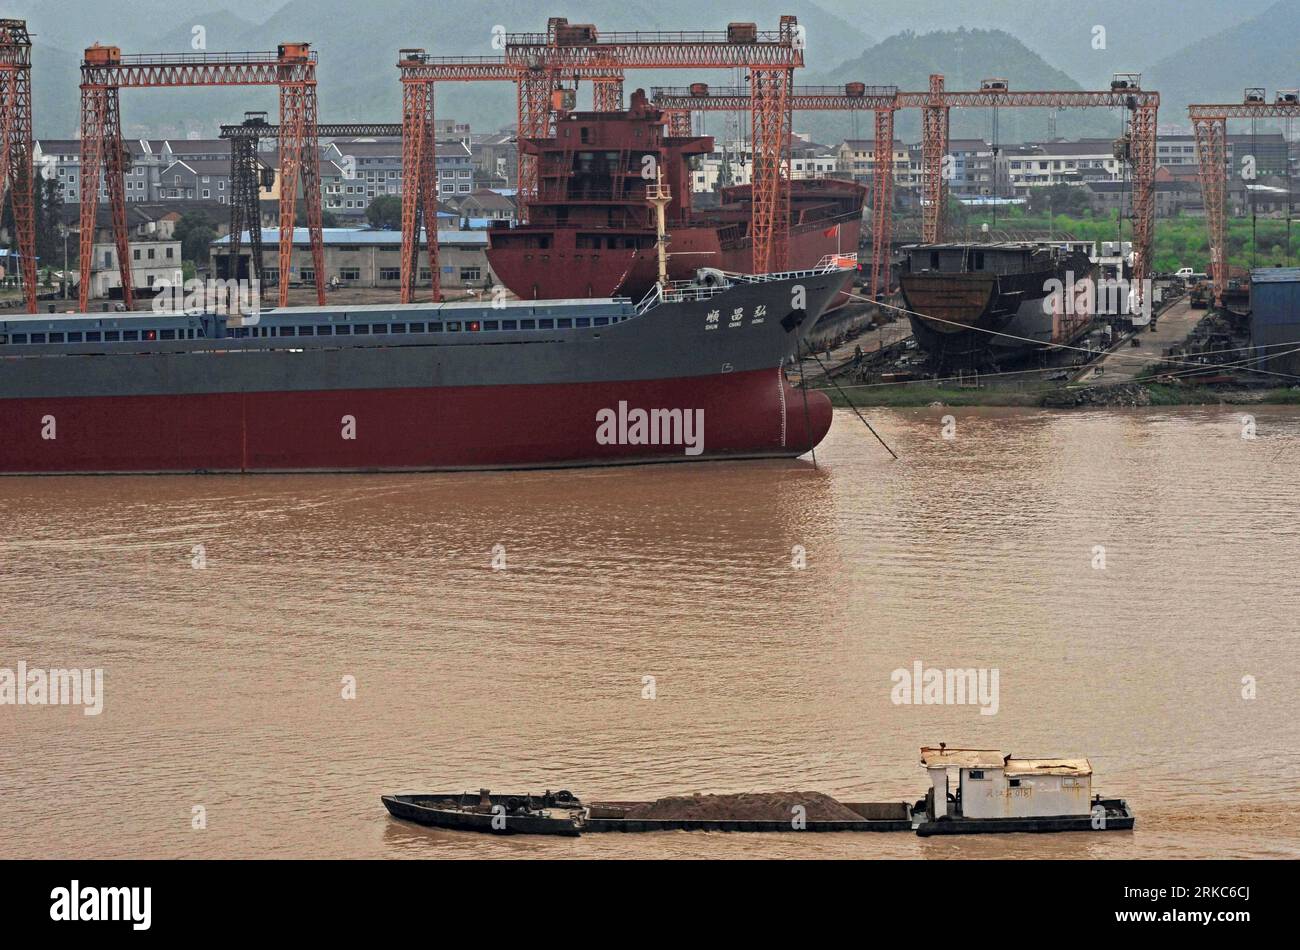 Bildnummer : 54678841 Datum : 28.09.2010 Copyright : imago/Xinhua (101126) -- TAIZHOU, 26 novembre 2010 (Xinhua) -- des navires sur la voie maritime sont vus dans un chantier naval privé à Linhai de la ville de Taizhou, province de Zhejiang dans l'est de la Chine, le 28 septembre 2010. En plus de 40 ans, l'océan vaste et profond a donné à Li Changxian tout sauf les soucis. Mais depuis le début de la crise financière mondiale il y a deux ans, le milliardaire de 44 ans est tombé dans le blues. Debout dans le chantier naval autrefois animé de Hongda qu'il courait à Taizhou, Li Changxian posa sa main sur la coque rouillée d'un navire inachevé et wond Banque D'Images